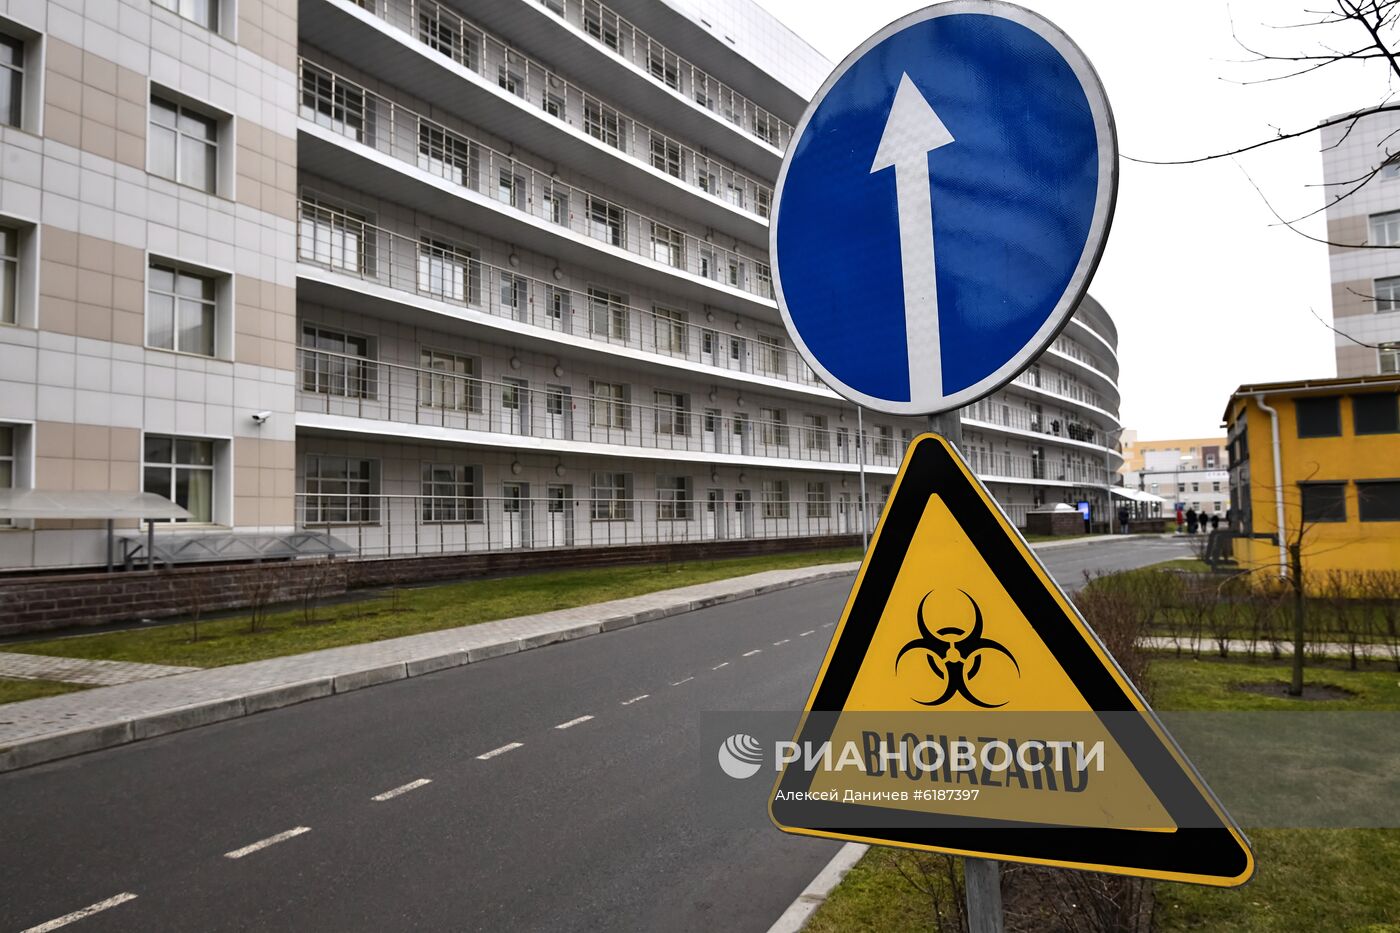 Отделение для людей с подозрением на коронавирус в Боткинской больнице